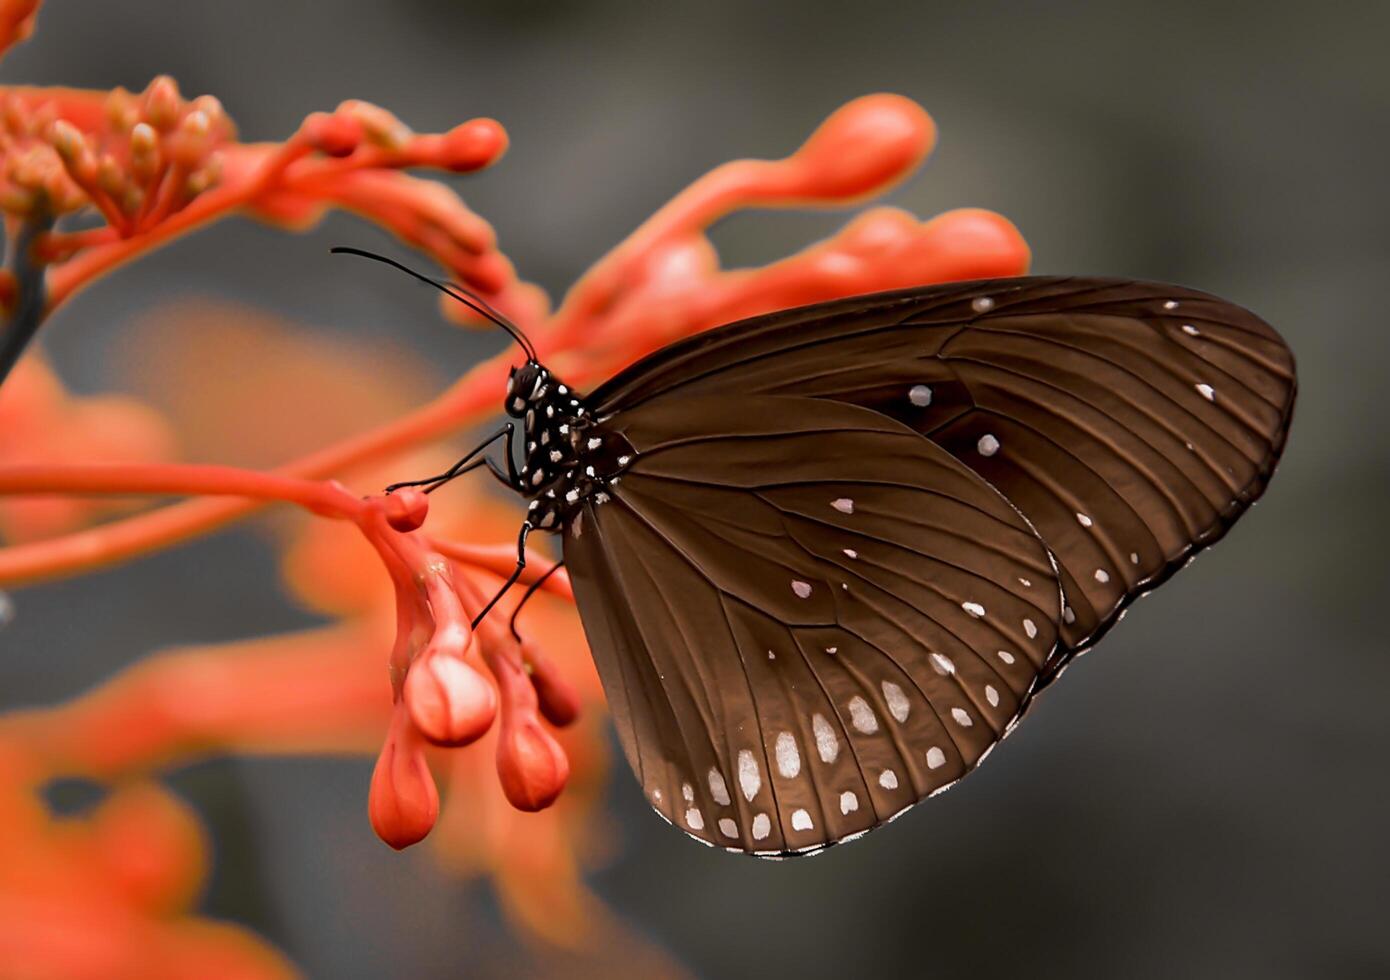 detailopname fotografie van vlinder schattig vlinder foto